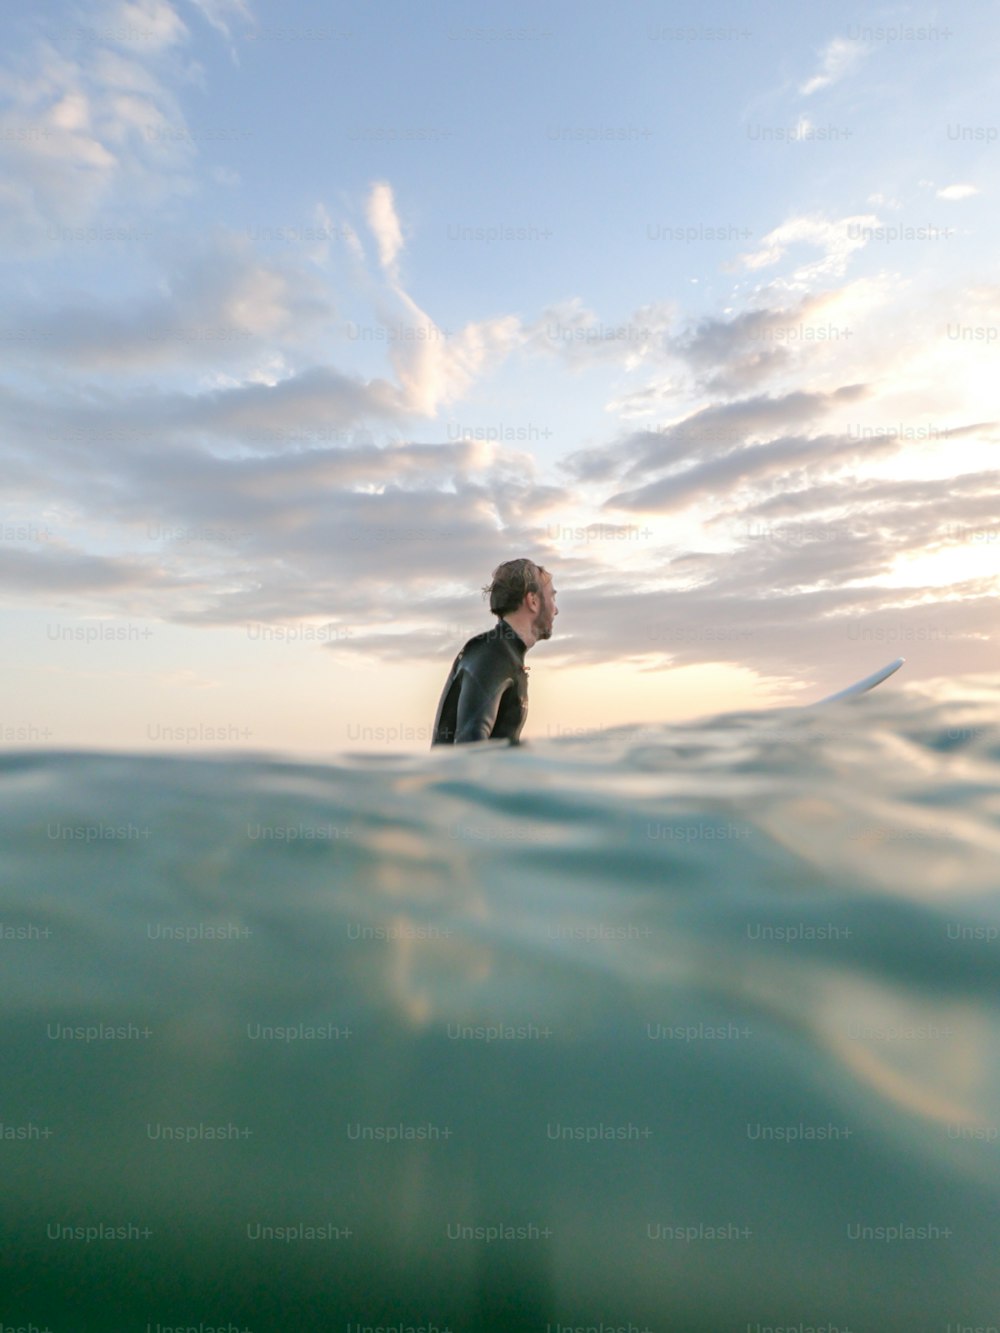 Un homme en combinaison de plongée debout sur une planche de surf dans l’océan